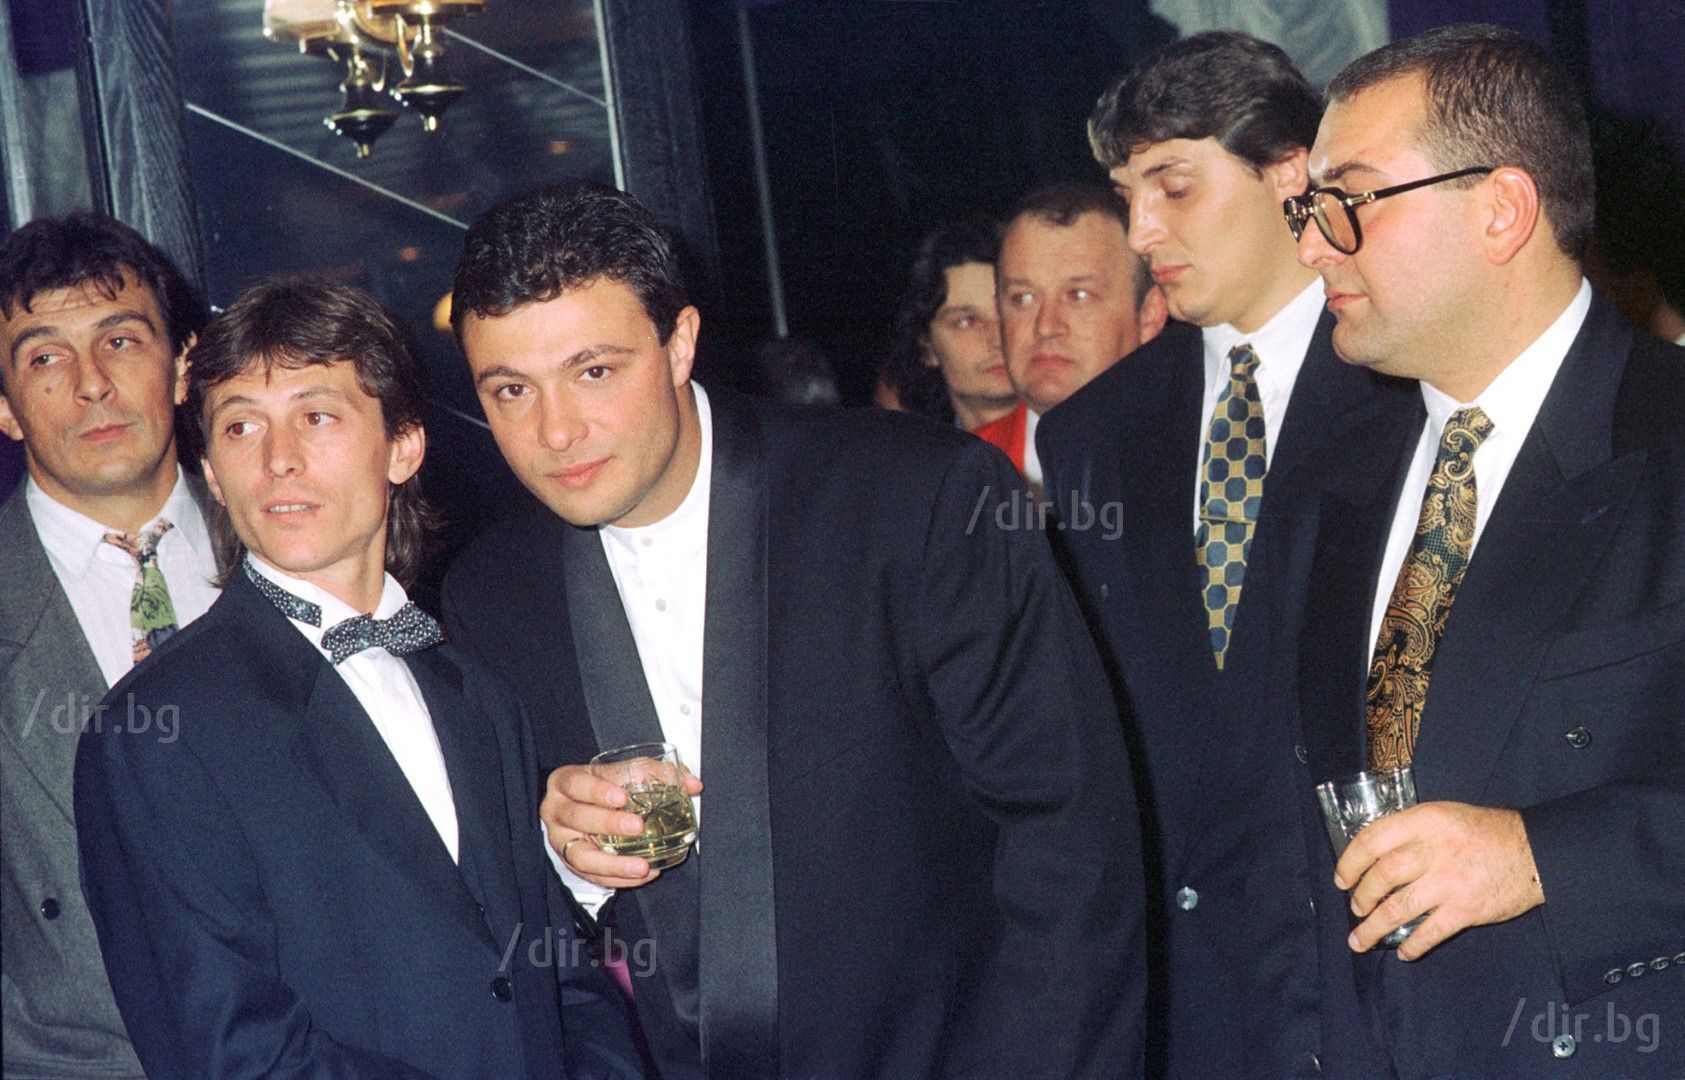  Георги Илиев и Николай Цветин (вляво от него) на купона по случай първия рожден ден на ВИС. Крайният вдясно е Филип Найденов-Фатик, който беше един от балансьорите на групировките. 